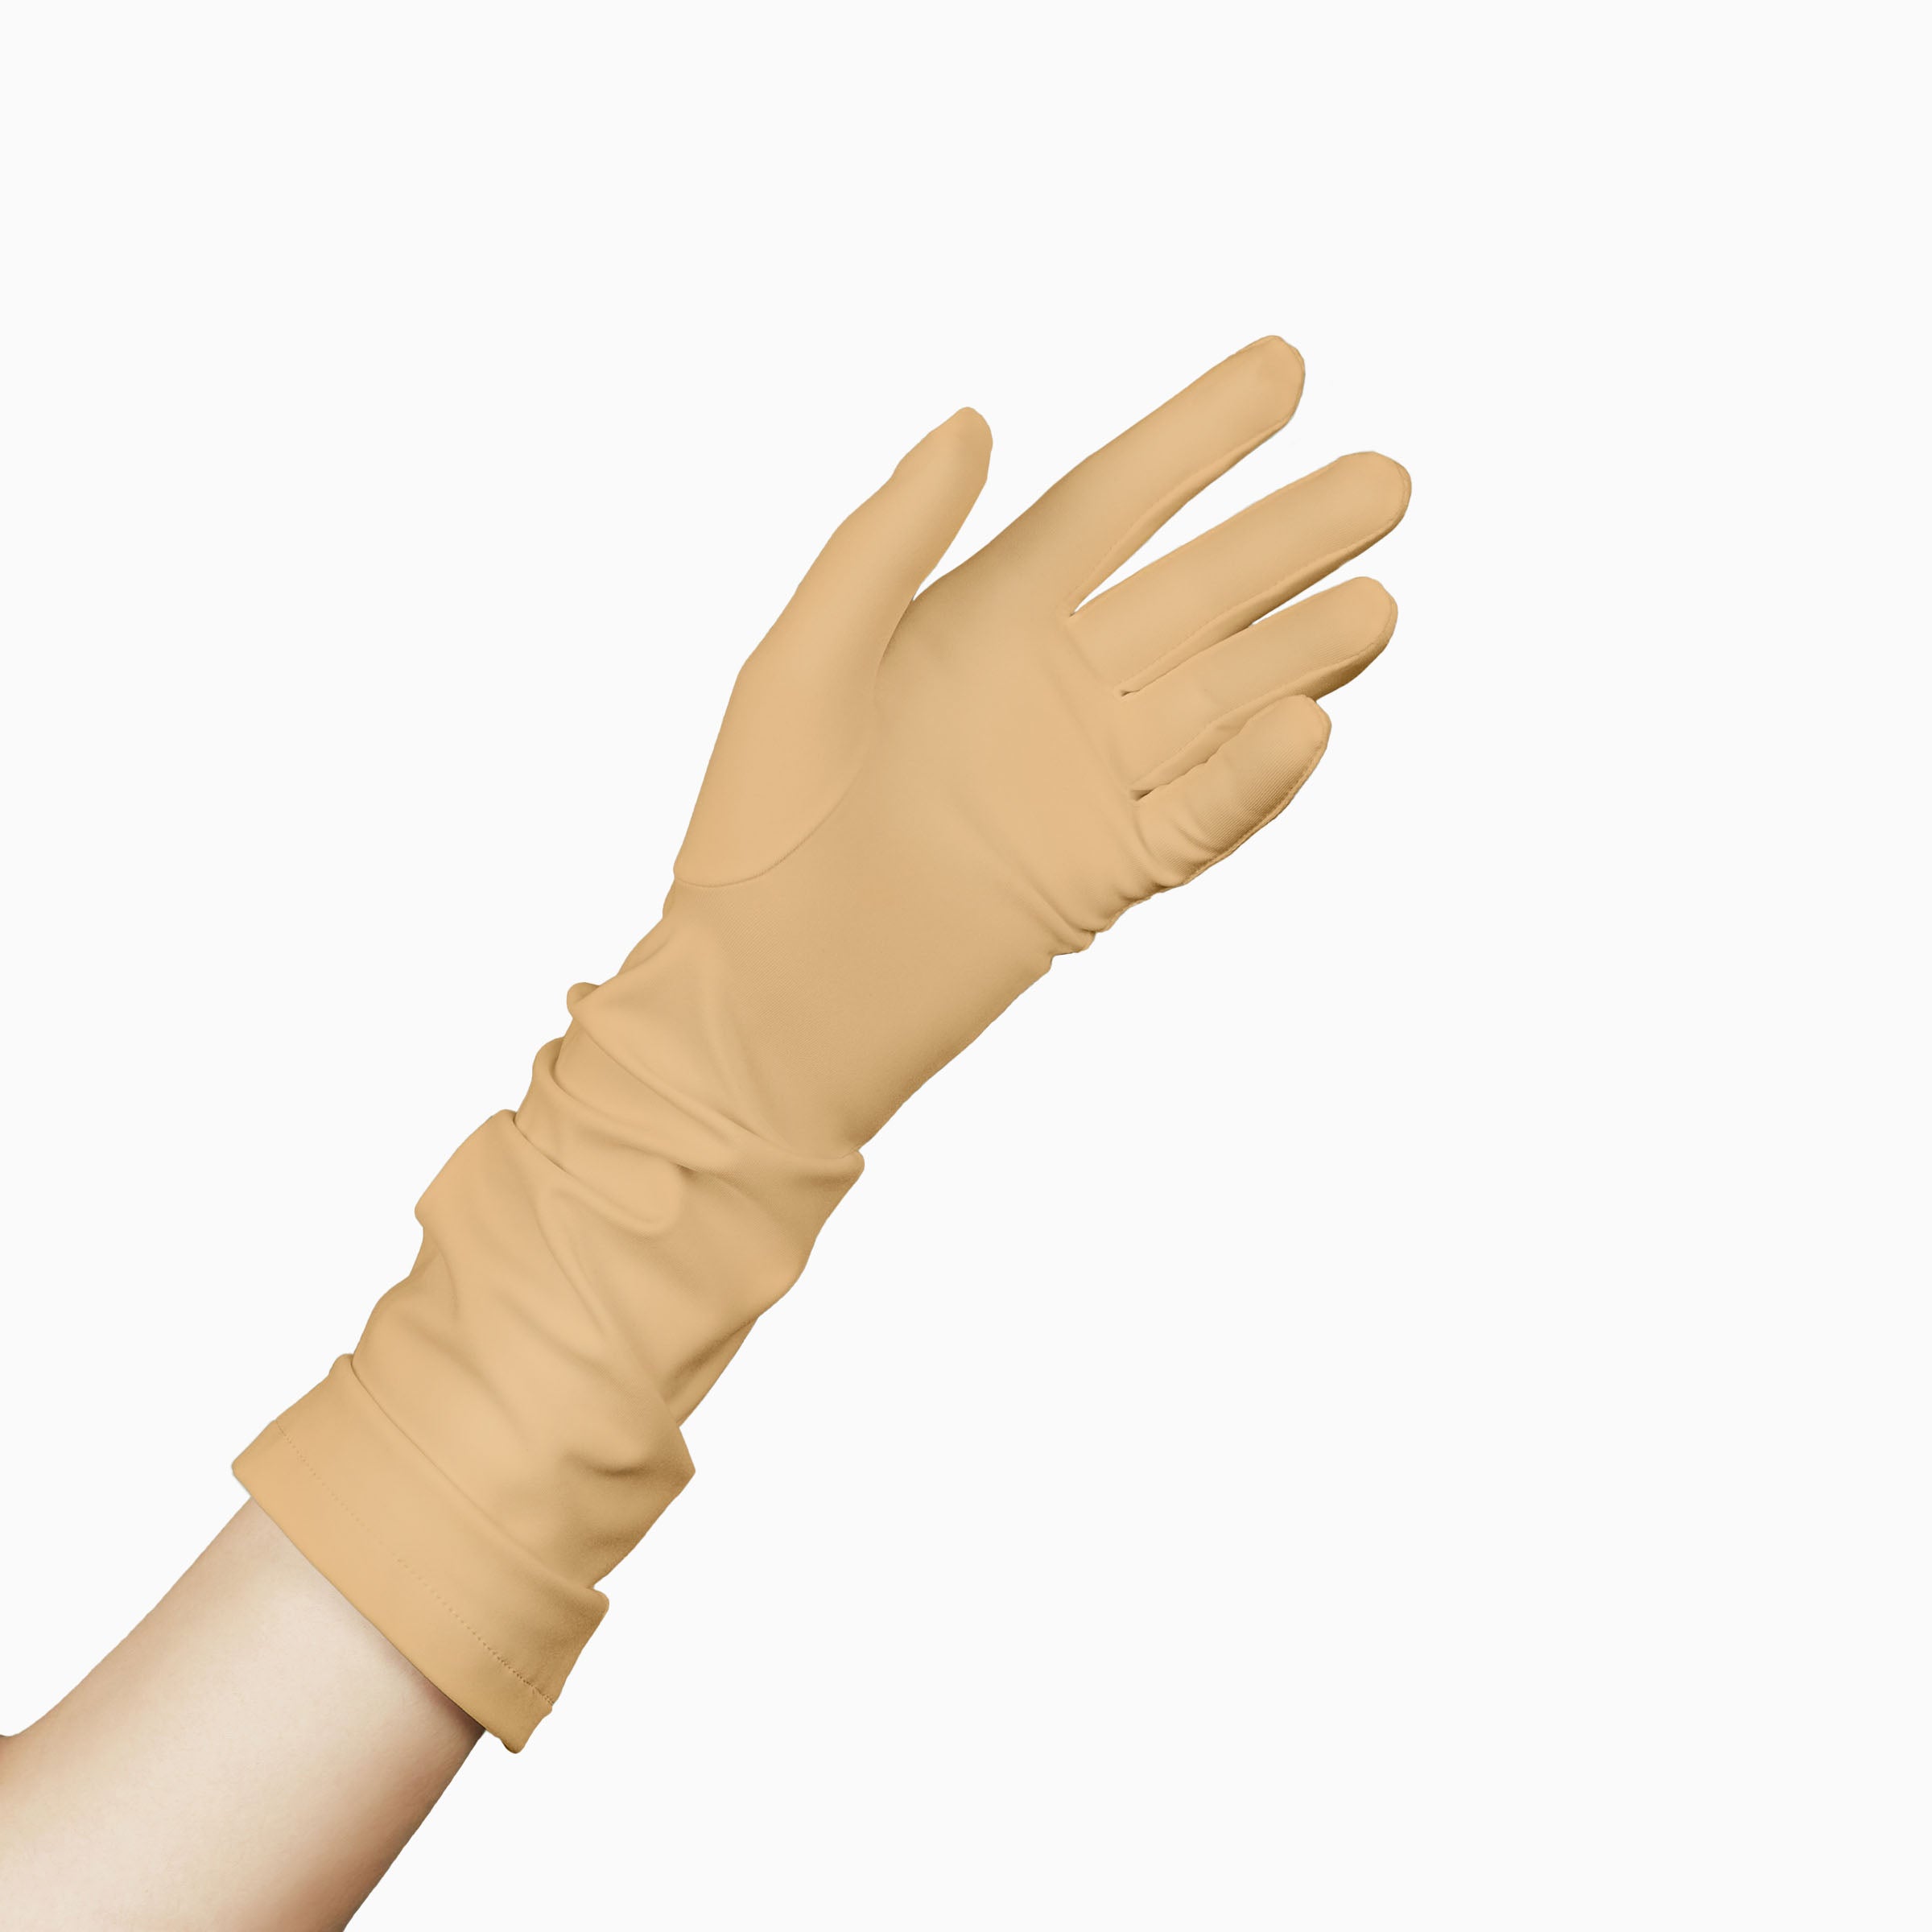 THE JILL women's glove in beige, with palm open.